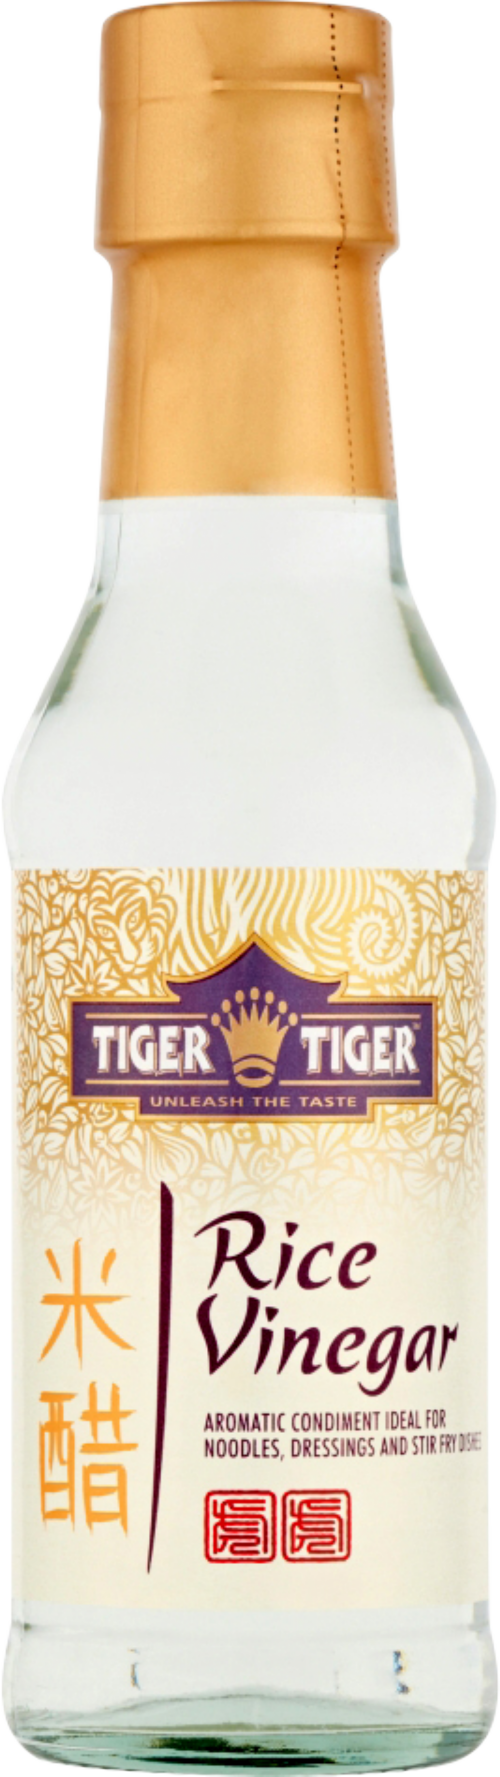 TIGER TIGER Rice Vinegar 150ml